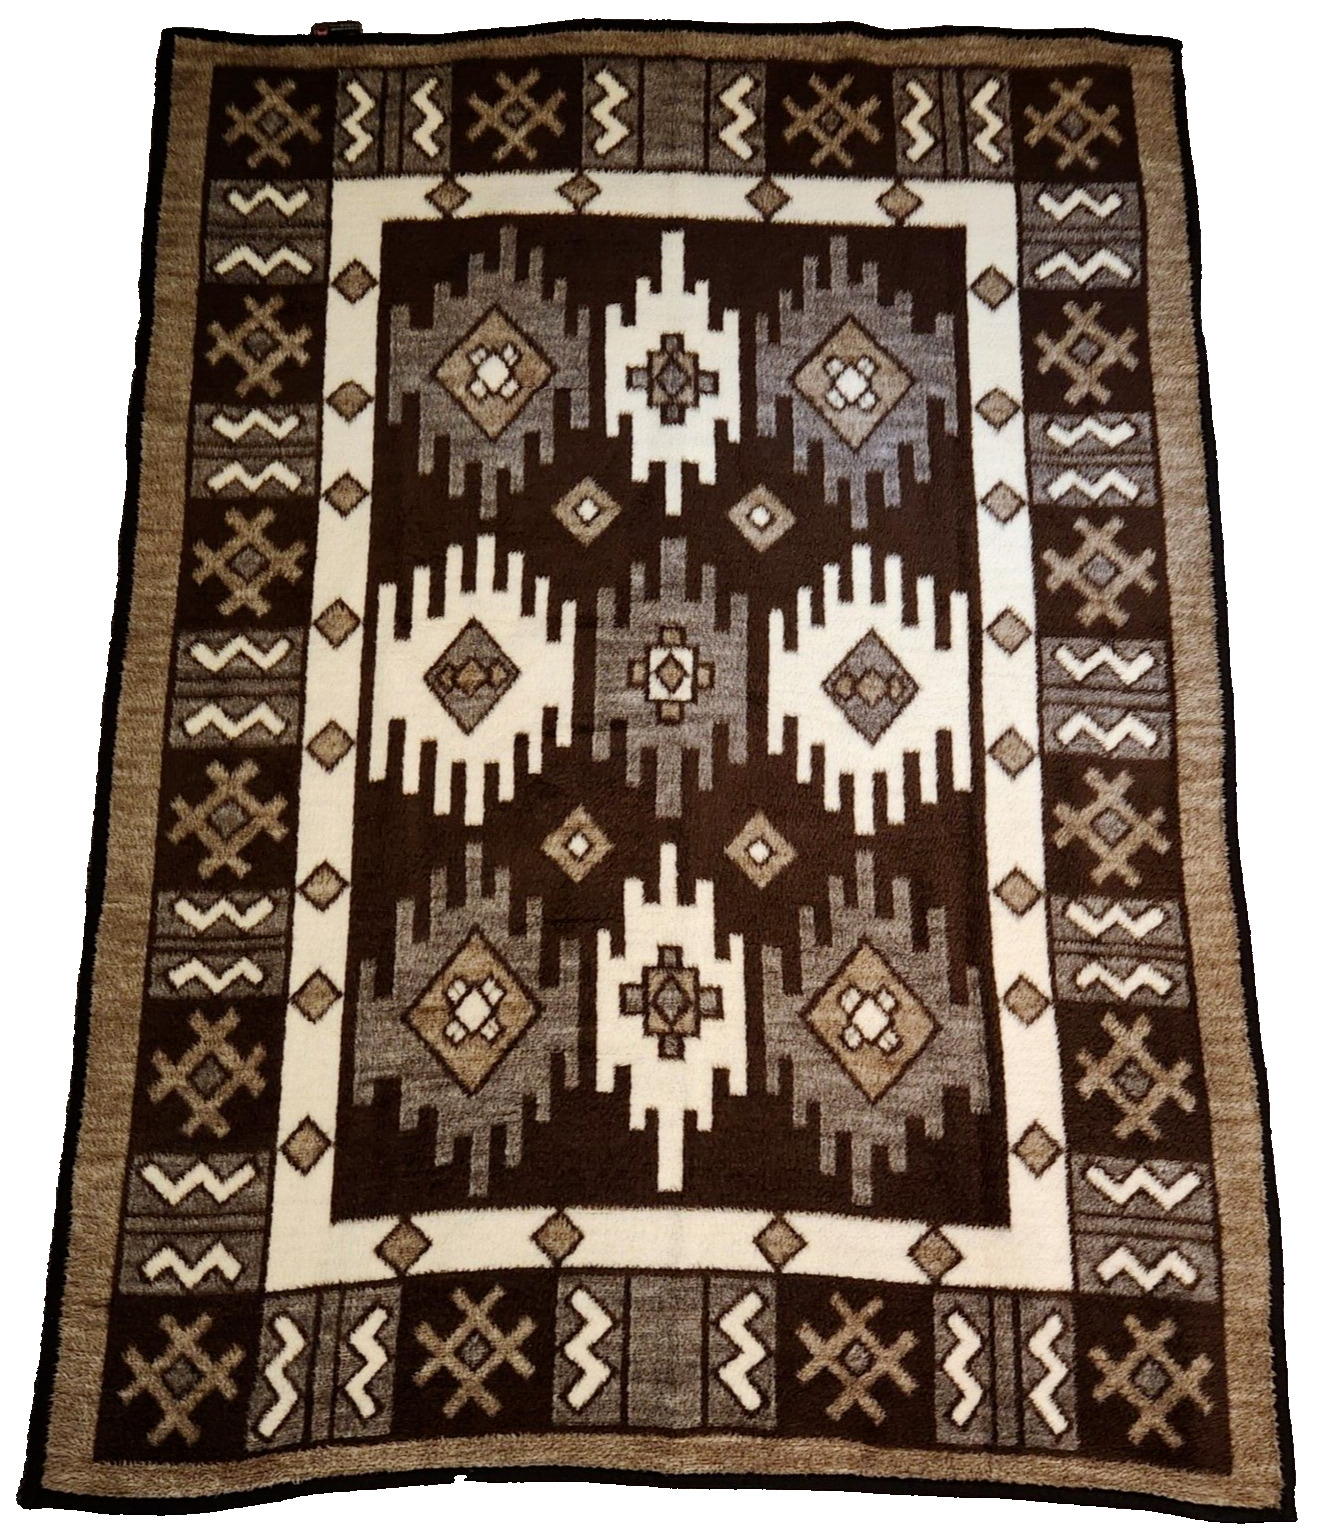 Biederlack Blanket Throw Vtg Aztec Southwest Native Brown West Germany 75